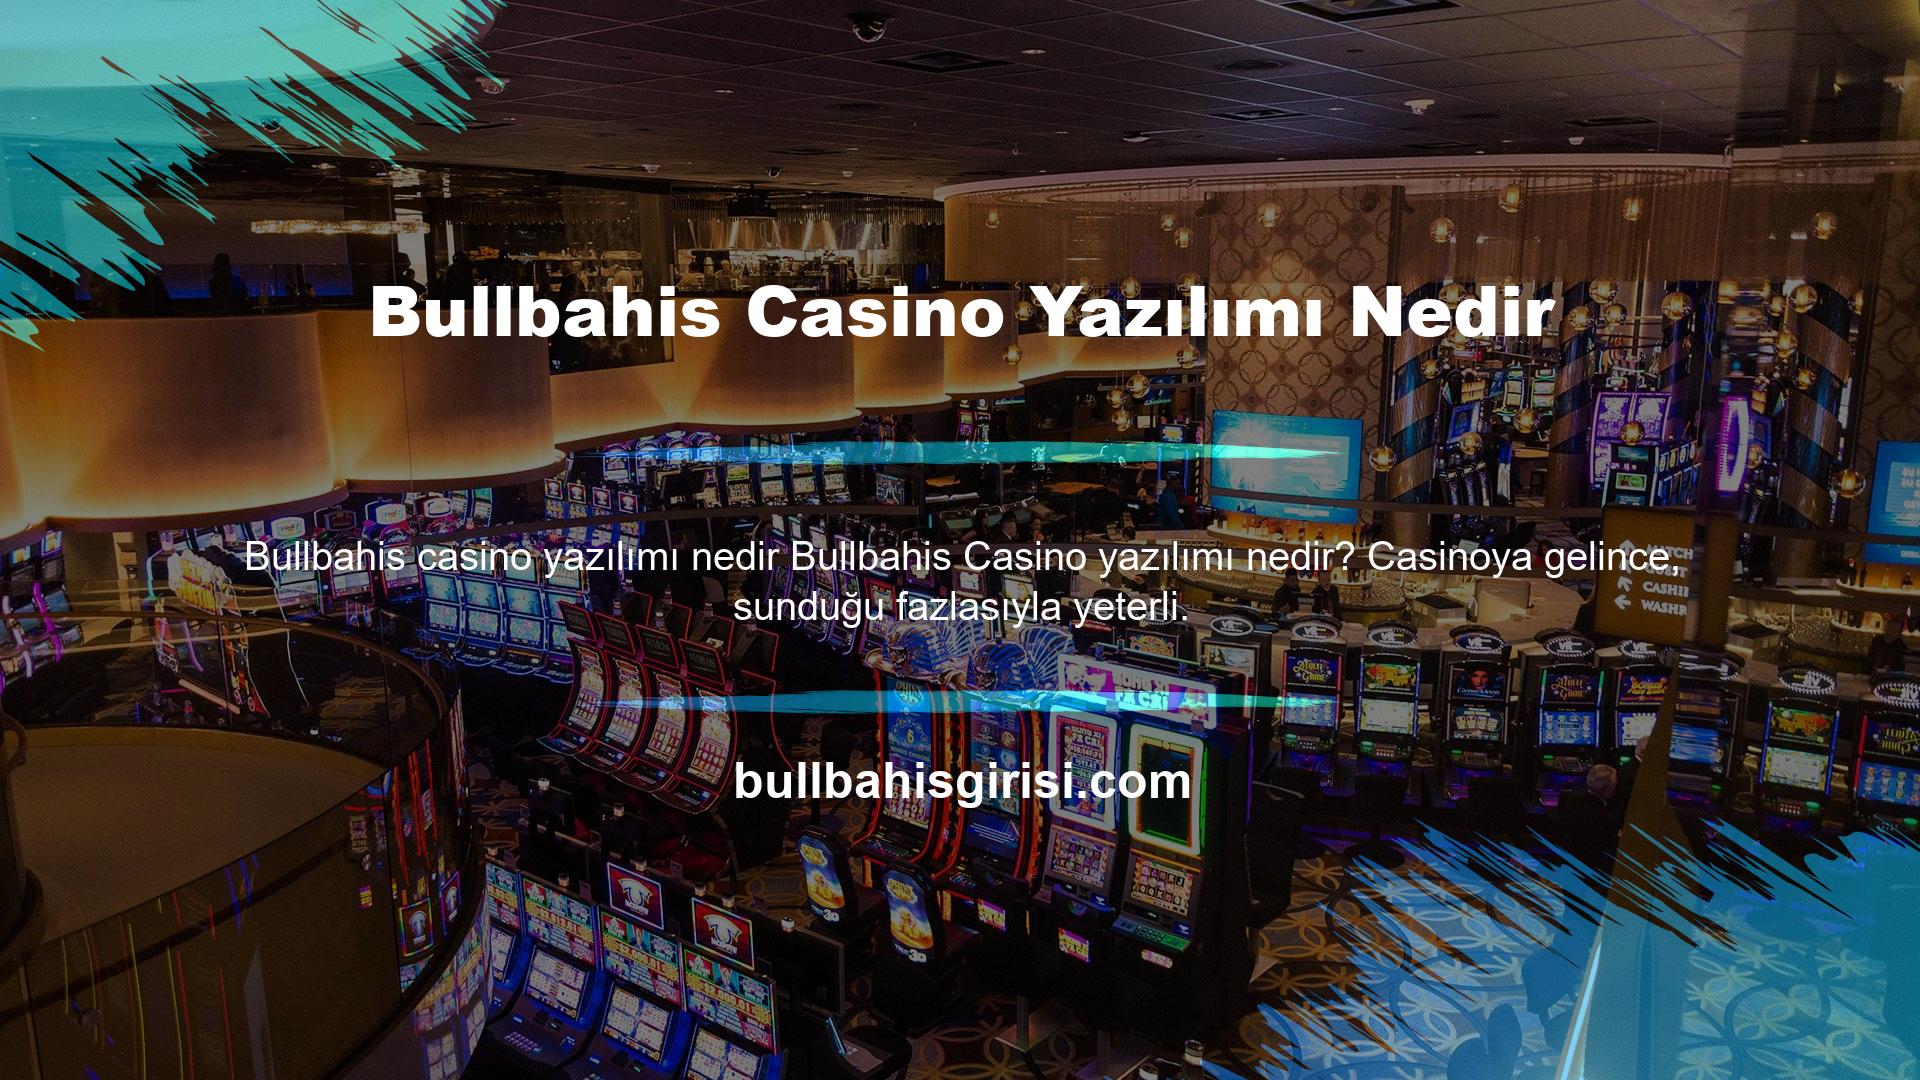 Casino, oyunculara oyun yayıncısı sunar, ancak maalesef bulunduğunuz yere bağlı olarak hepsine erişilemez